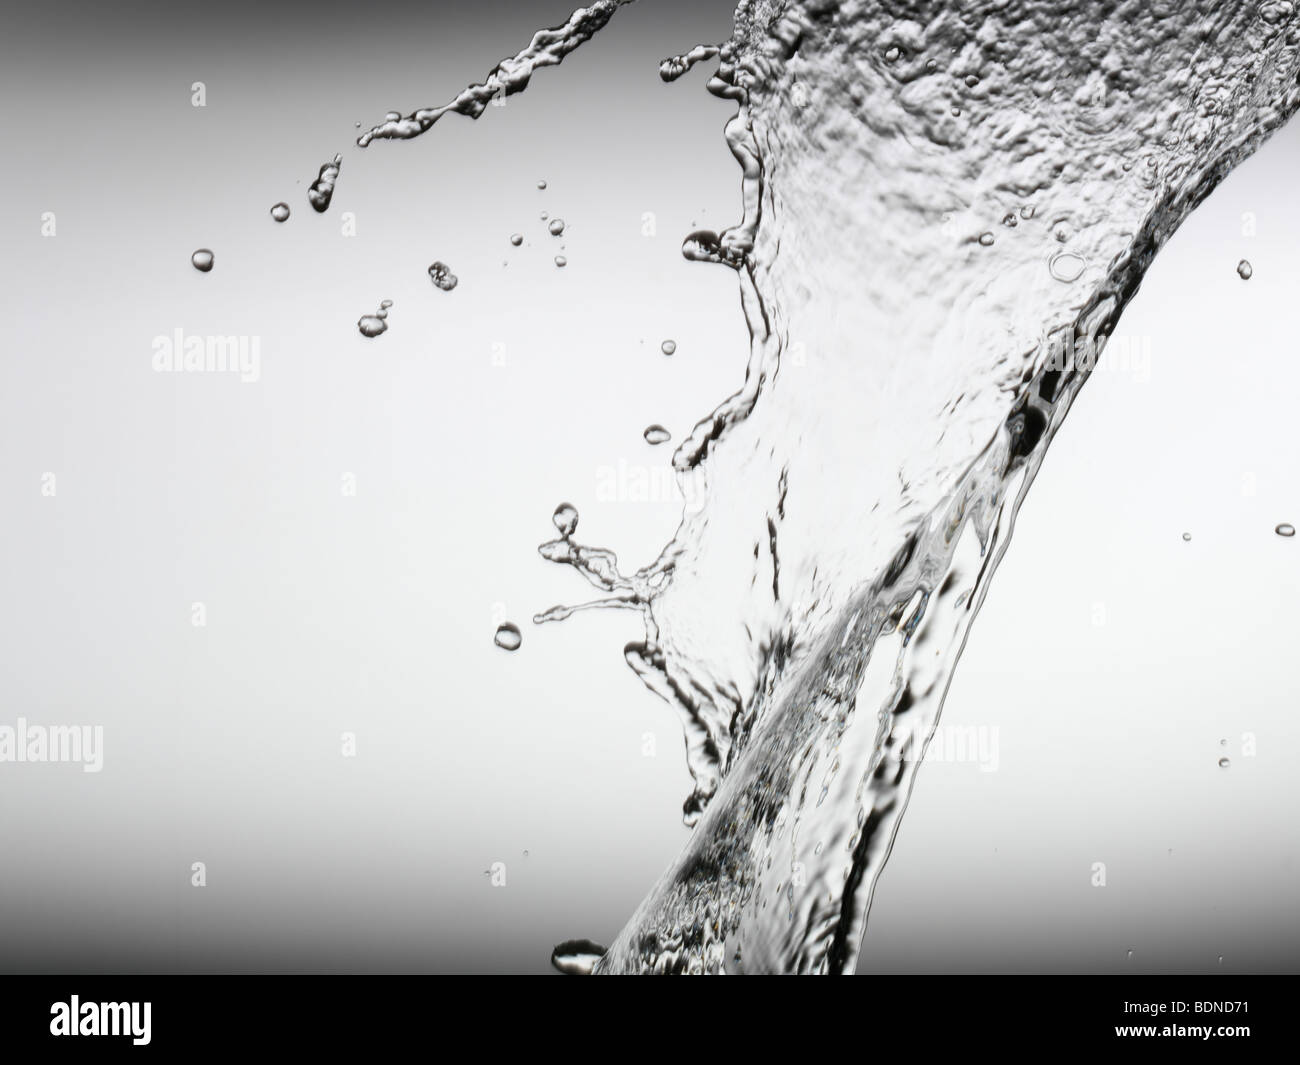 Splash of water Stock Photo